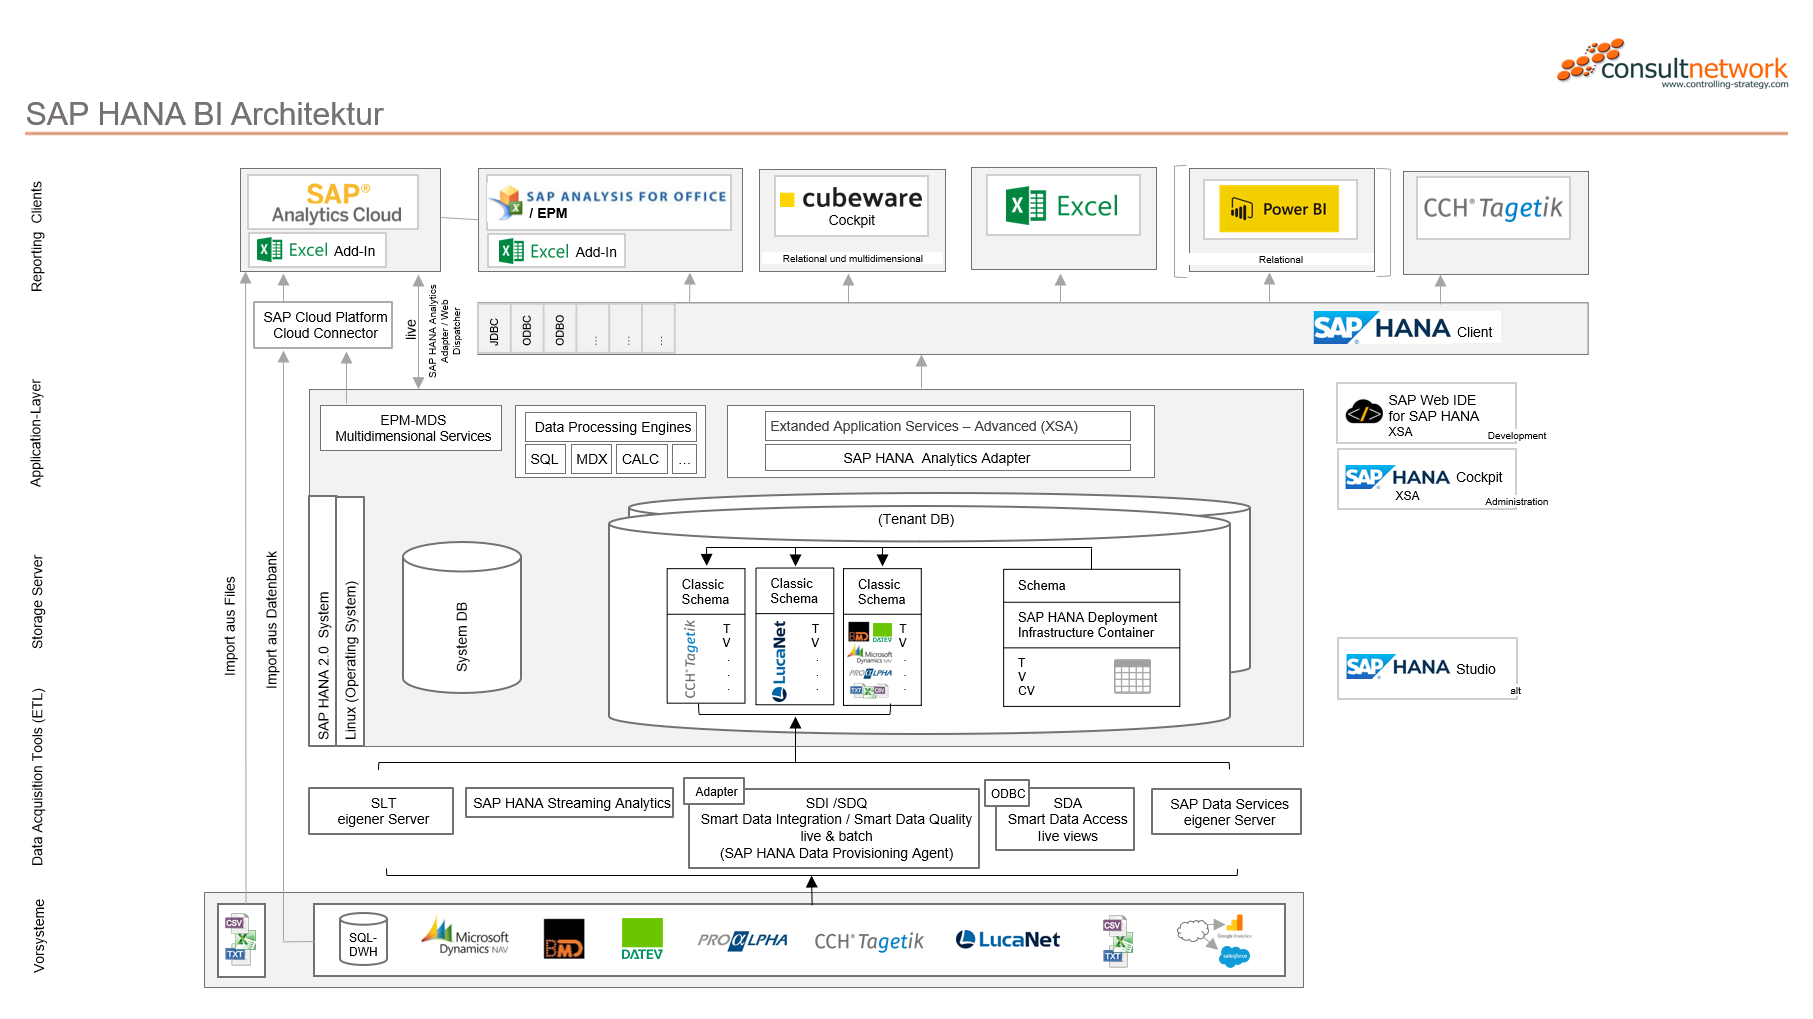 SAP HANA BI Architektur Schaubild von consultnetwork